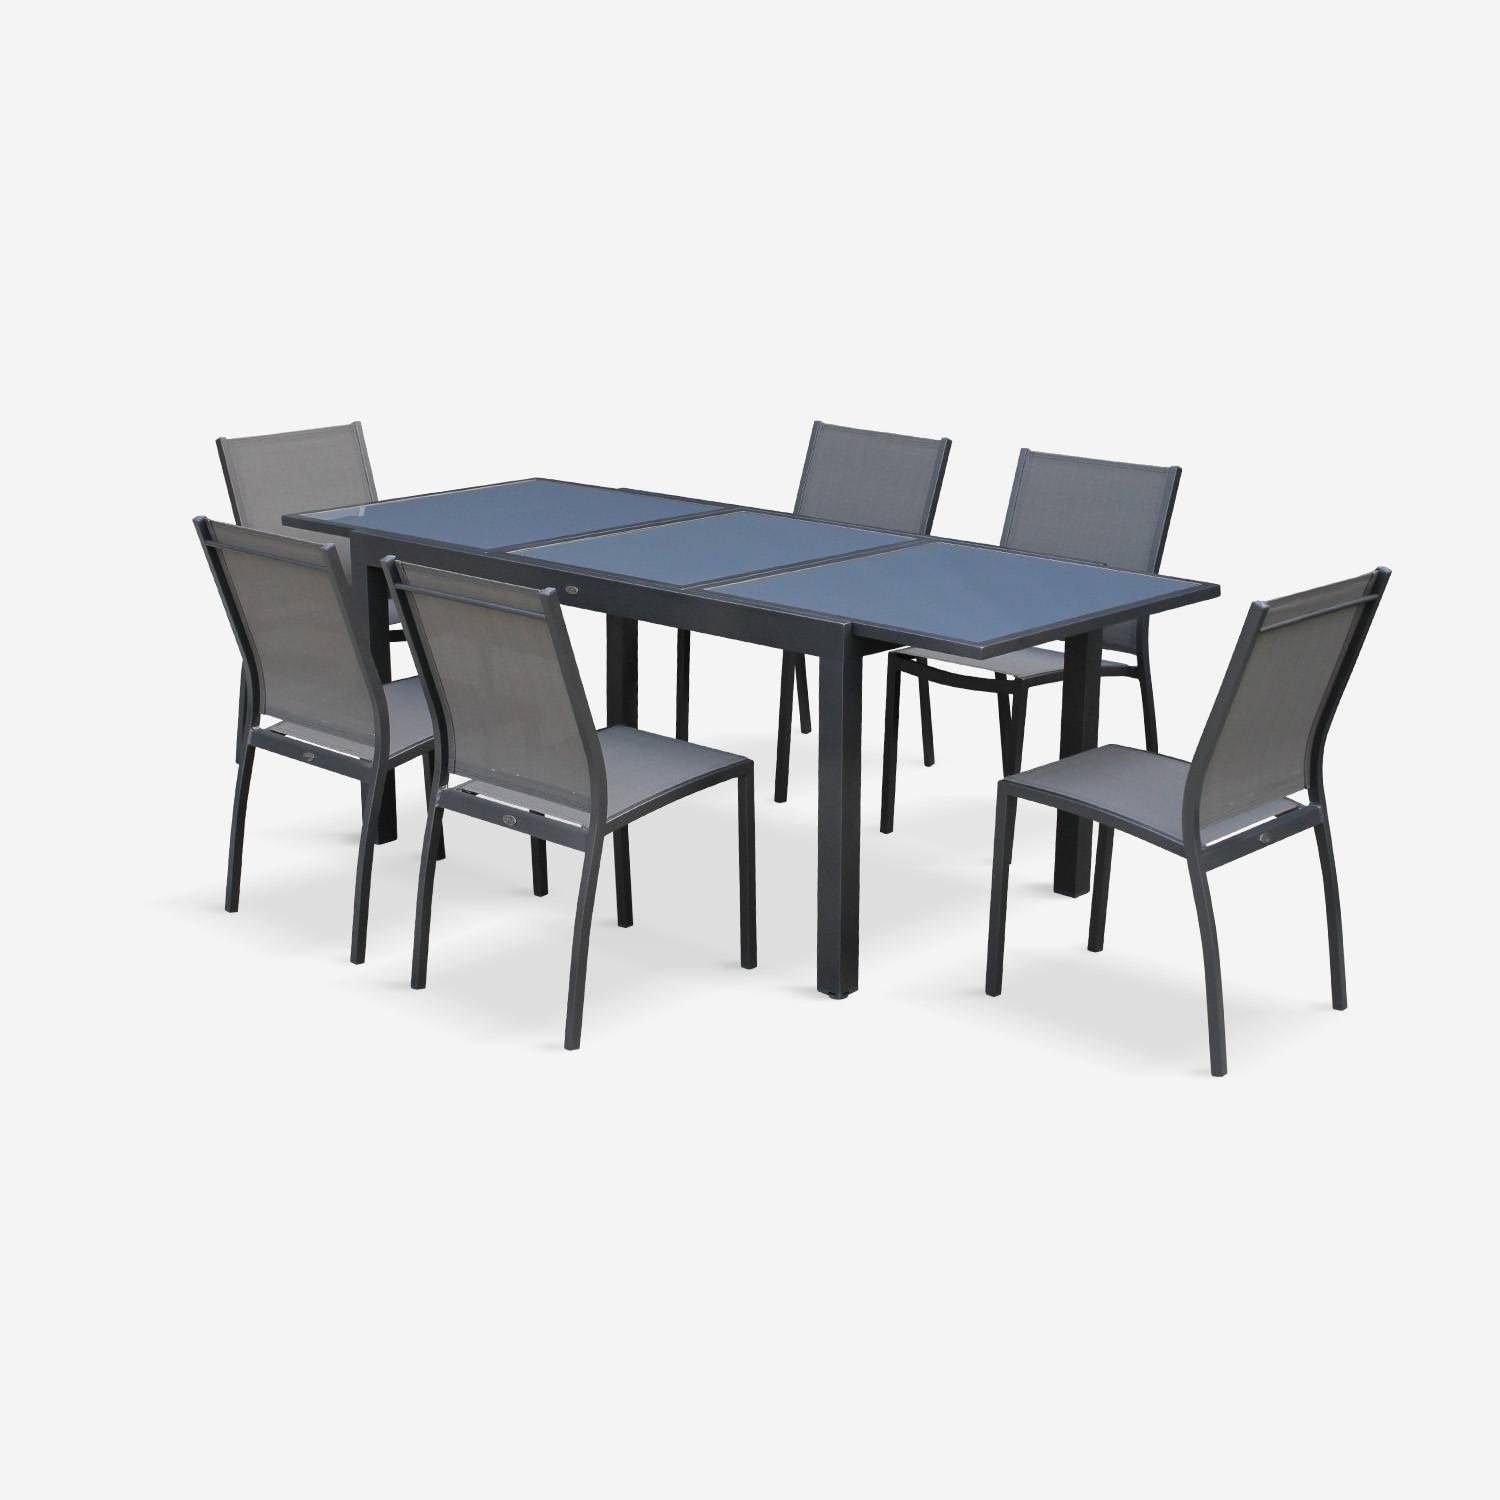 Tavolo da giardino allungabile - modello: Orlando, colore: Grigio scuro - Tavolo in alluminio, dimensioni: 150/210cm, ripiano in vetro, prolunga e 6 sedie in textilene Photo2